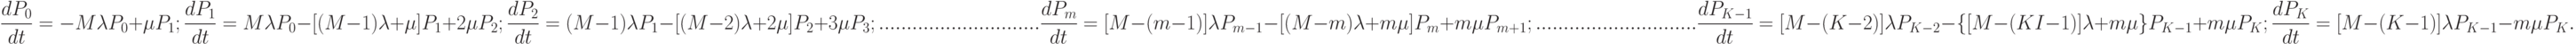 \frac{dP_{0}}{dt}=-M\lambda P_{0}+\mu P_{1};\\
\frac{dP_{1}}{dt}=M\lambda P_{0}-[(M-1)\lambda +\mu] P_{1}+2\mu P_{2};\\
\frac{dP_{2}}{dt}=(M-1)\lambda P_{1}-[(M-2)\lambda +2\mu] P_{2}+3\mu P_{3};\\
.............................\\
\frac{dP_{m}}{dt}=[M-(m-1)]\lambda P_{m-1}-[(M-m)\lambda +m\mu] P_{m}+m\mu P_{m+1};\\
.............................\\
\frac{dP_{K-1}}{dt}=[M-(K-2)]\lambda P_{K-2}-\{[M-(KI-1)]\lambda +m\mu\} P_{K-1}+m\mu P_{K};\\
\frac{dP_{K}}{dt}=[M-(K-1)]\lambda P_{K-1}-m\mu P_{K}.